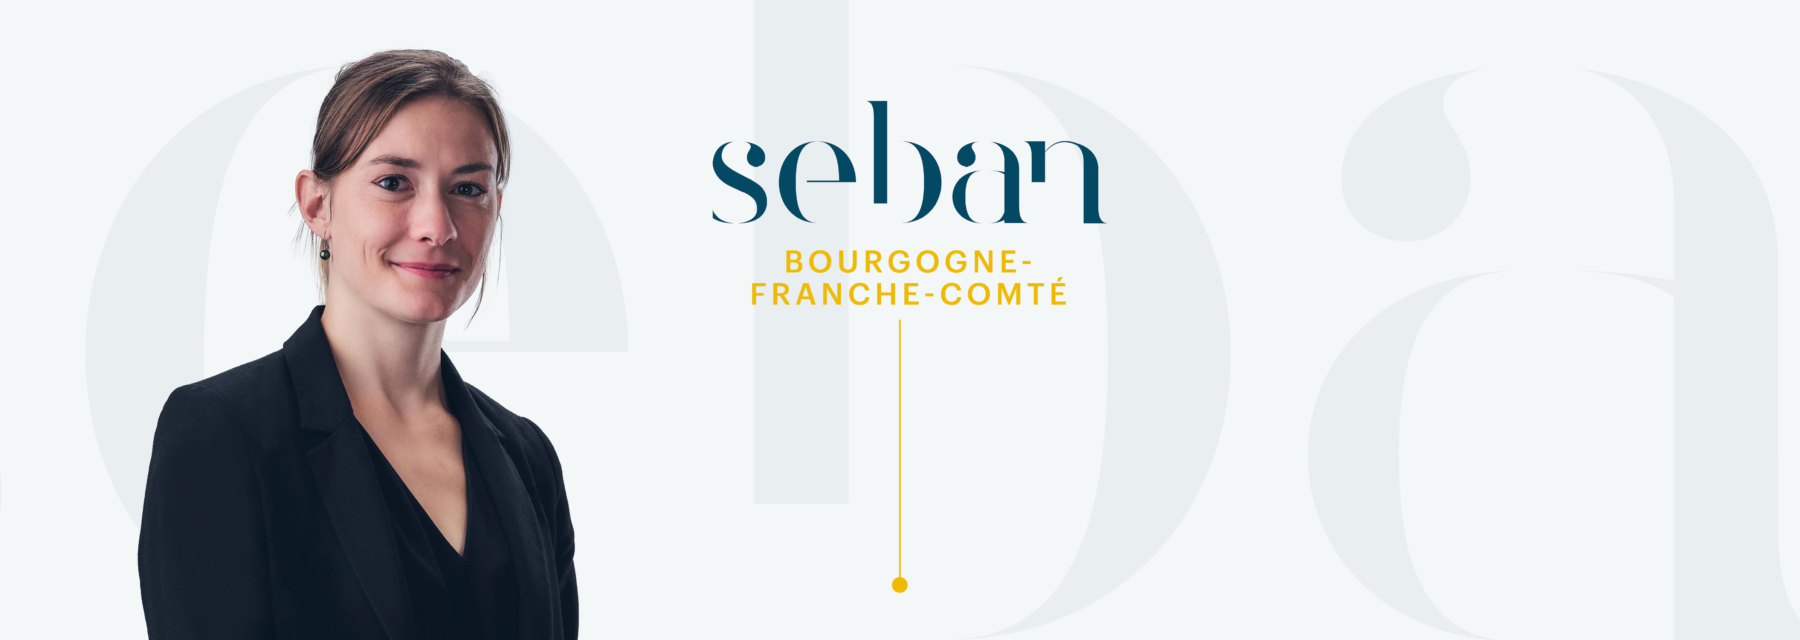 SEBAN BOURGOGNE-FRANCHE-COMTE